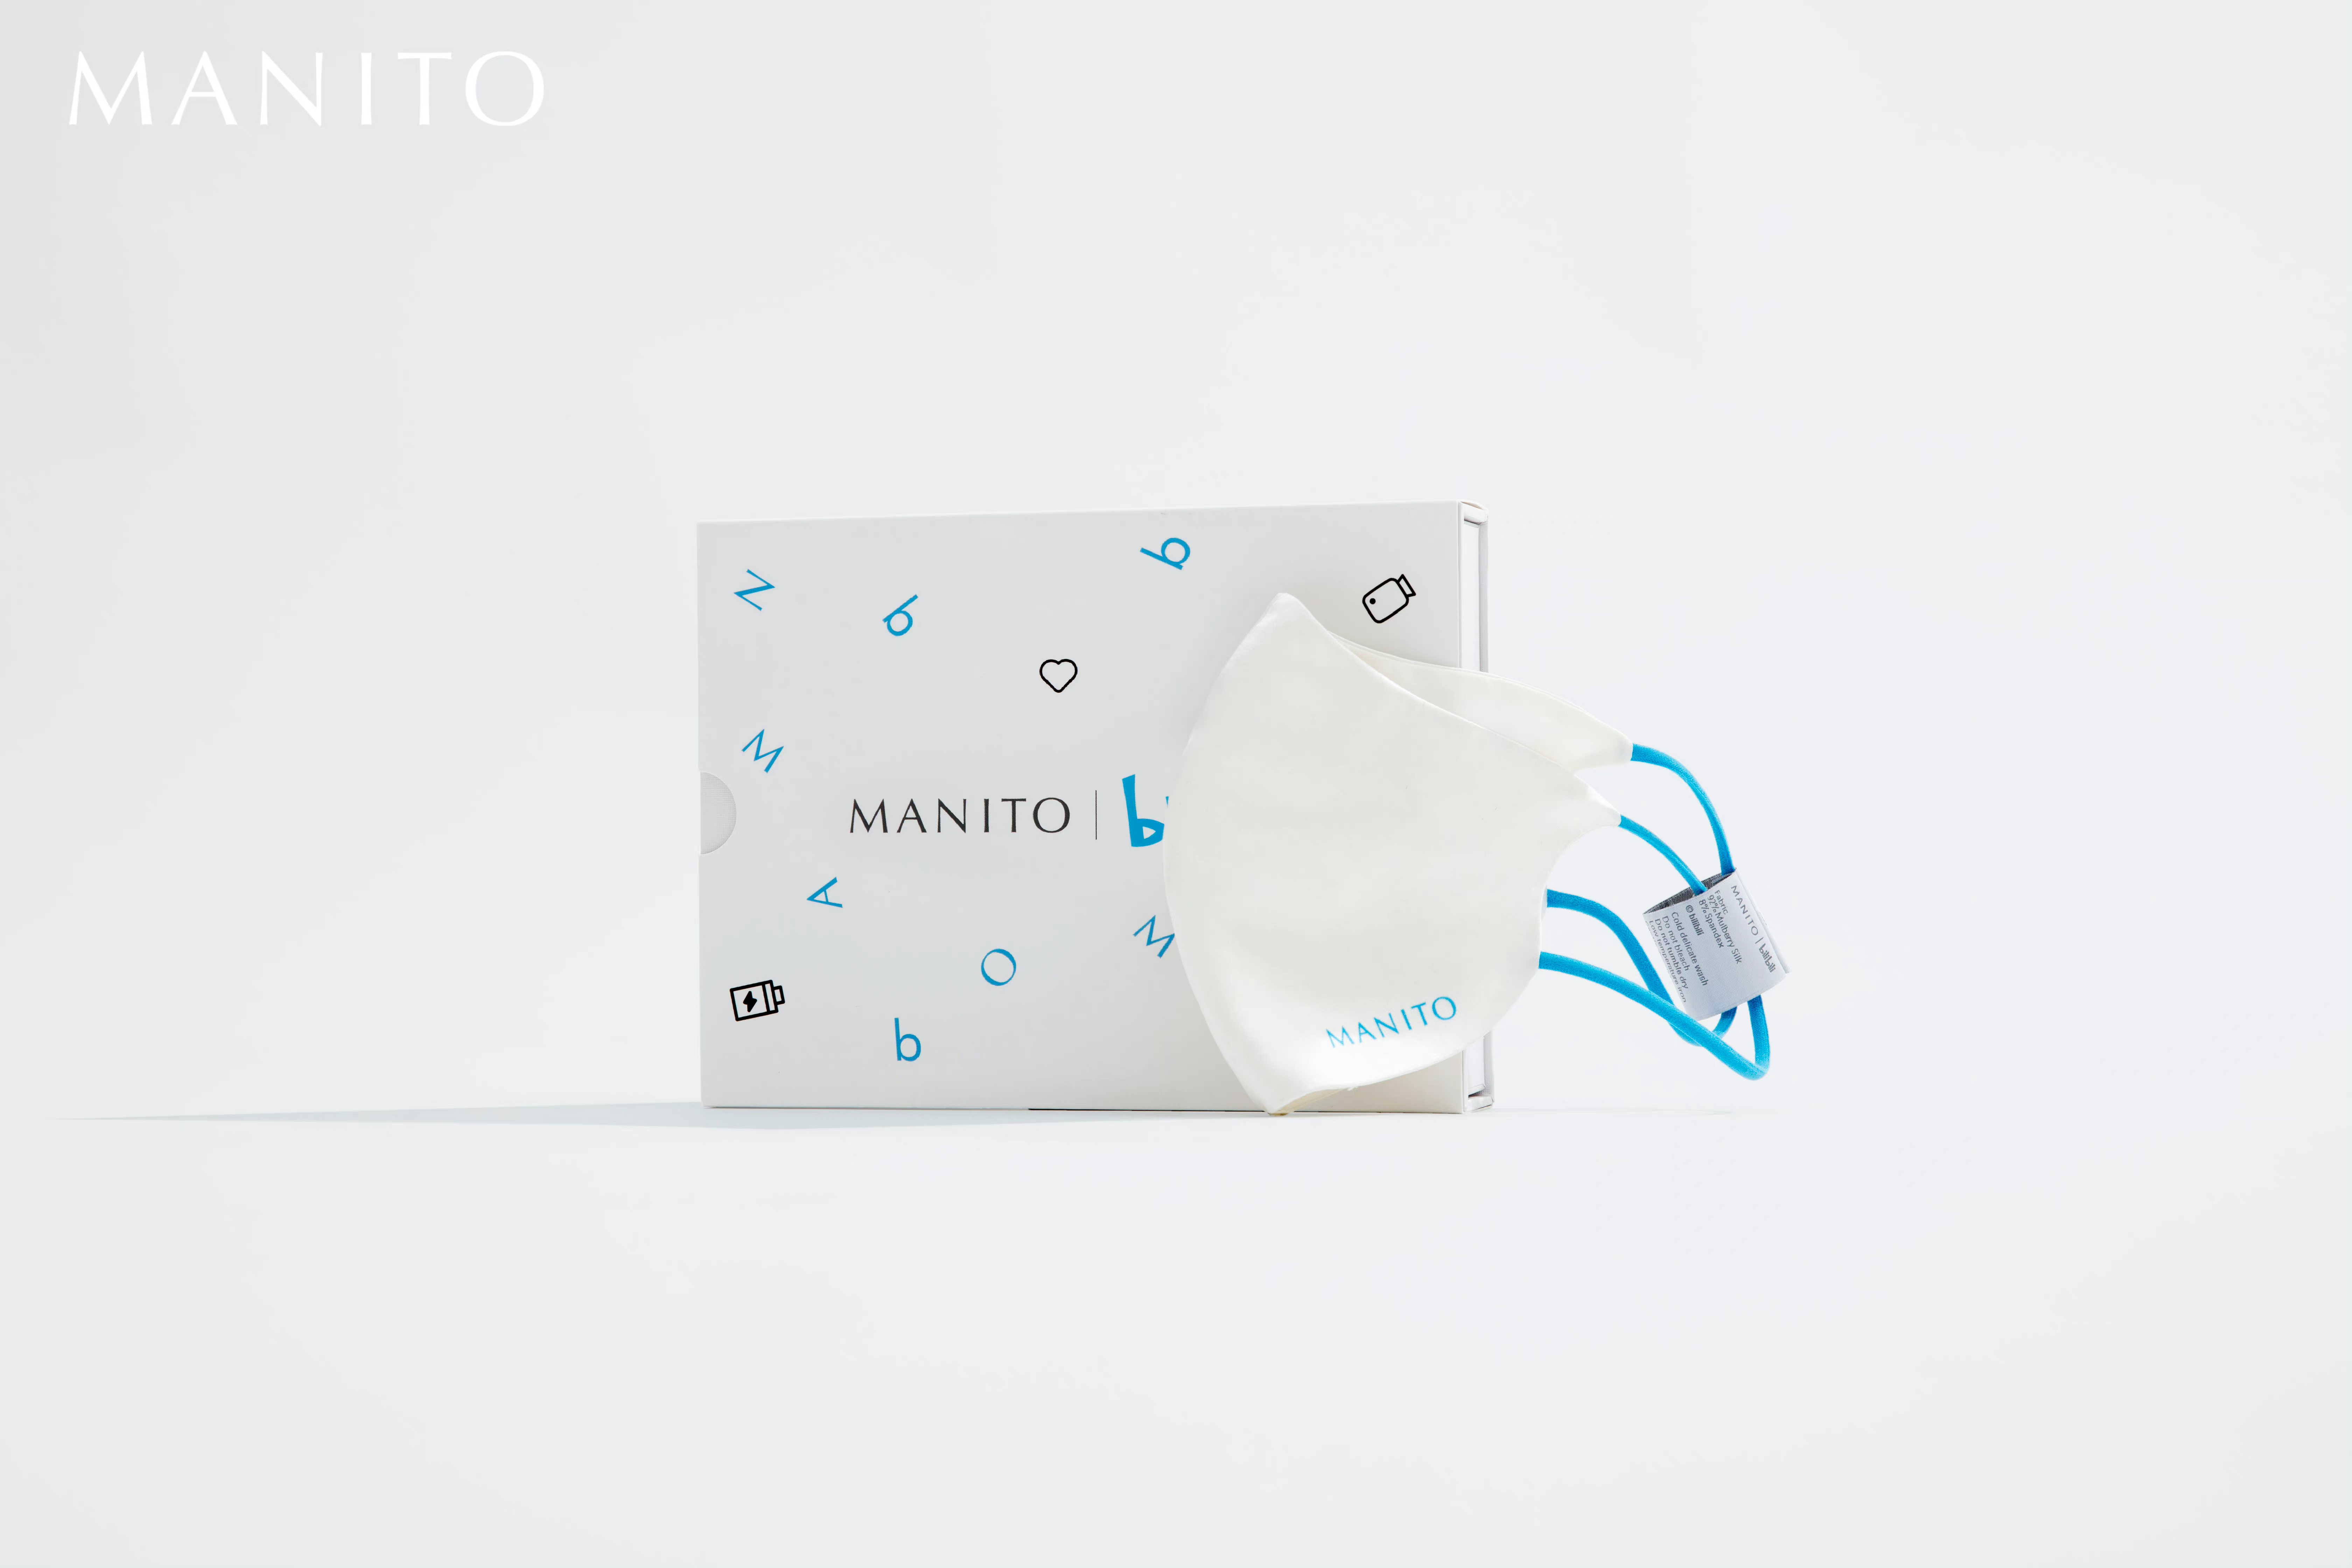 B 站 × MANITO 推出联名礼盒